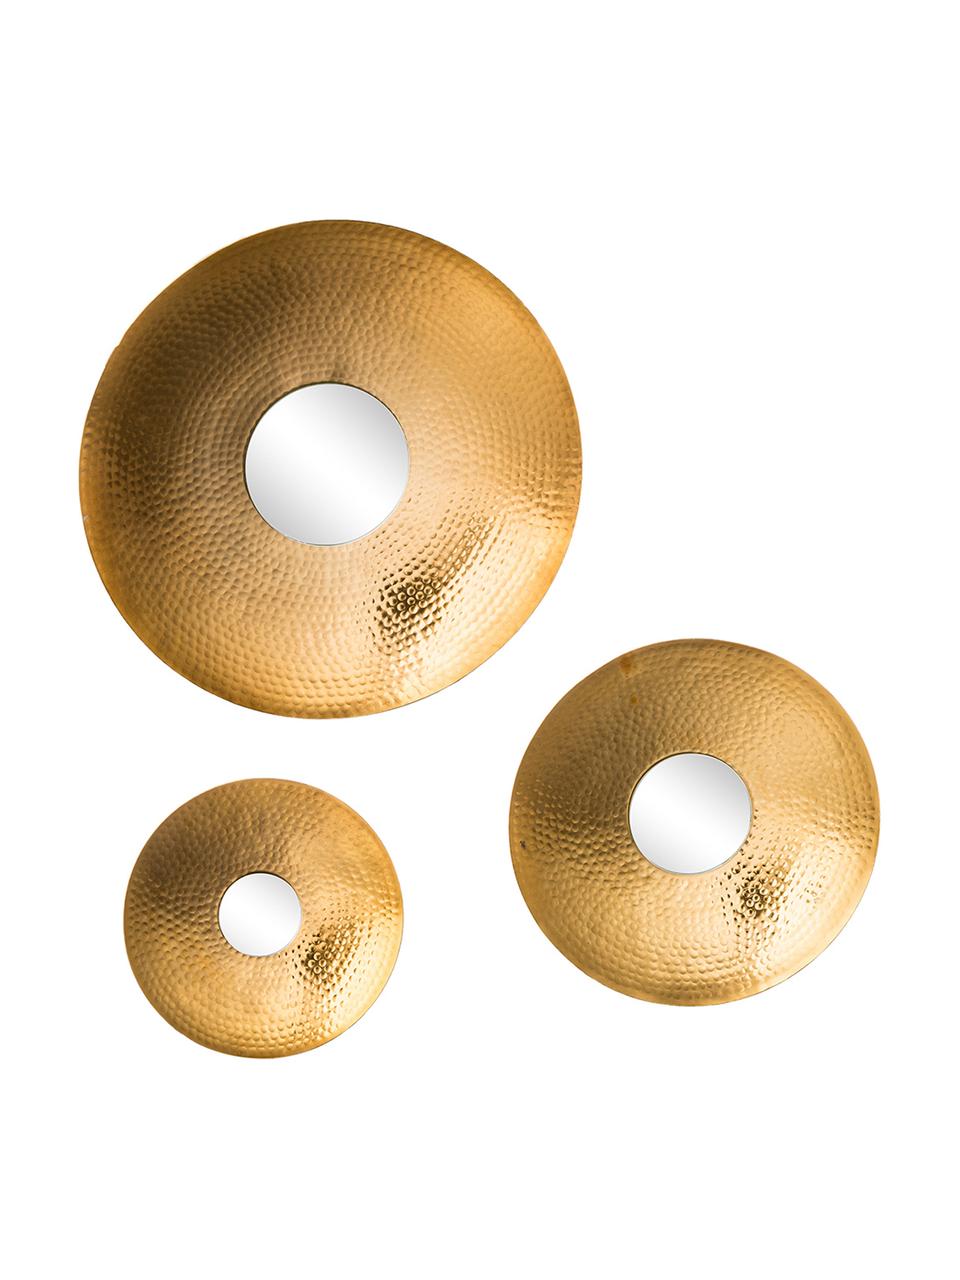 Rundes Wandspiegel-Set Eyes mit goldenem Aluminiumrahmen, 3-tlg, Rahmen: Aluminium, gehämmert und , Spiegelfläche: Spiegelglas, Goldfarben, Set mit verschiedenen Größen